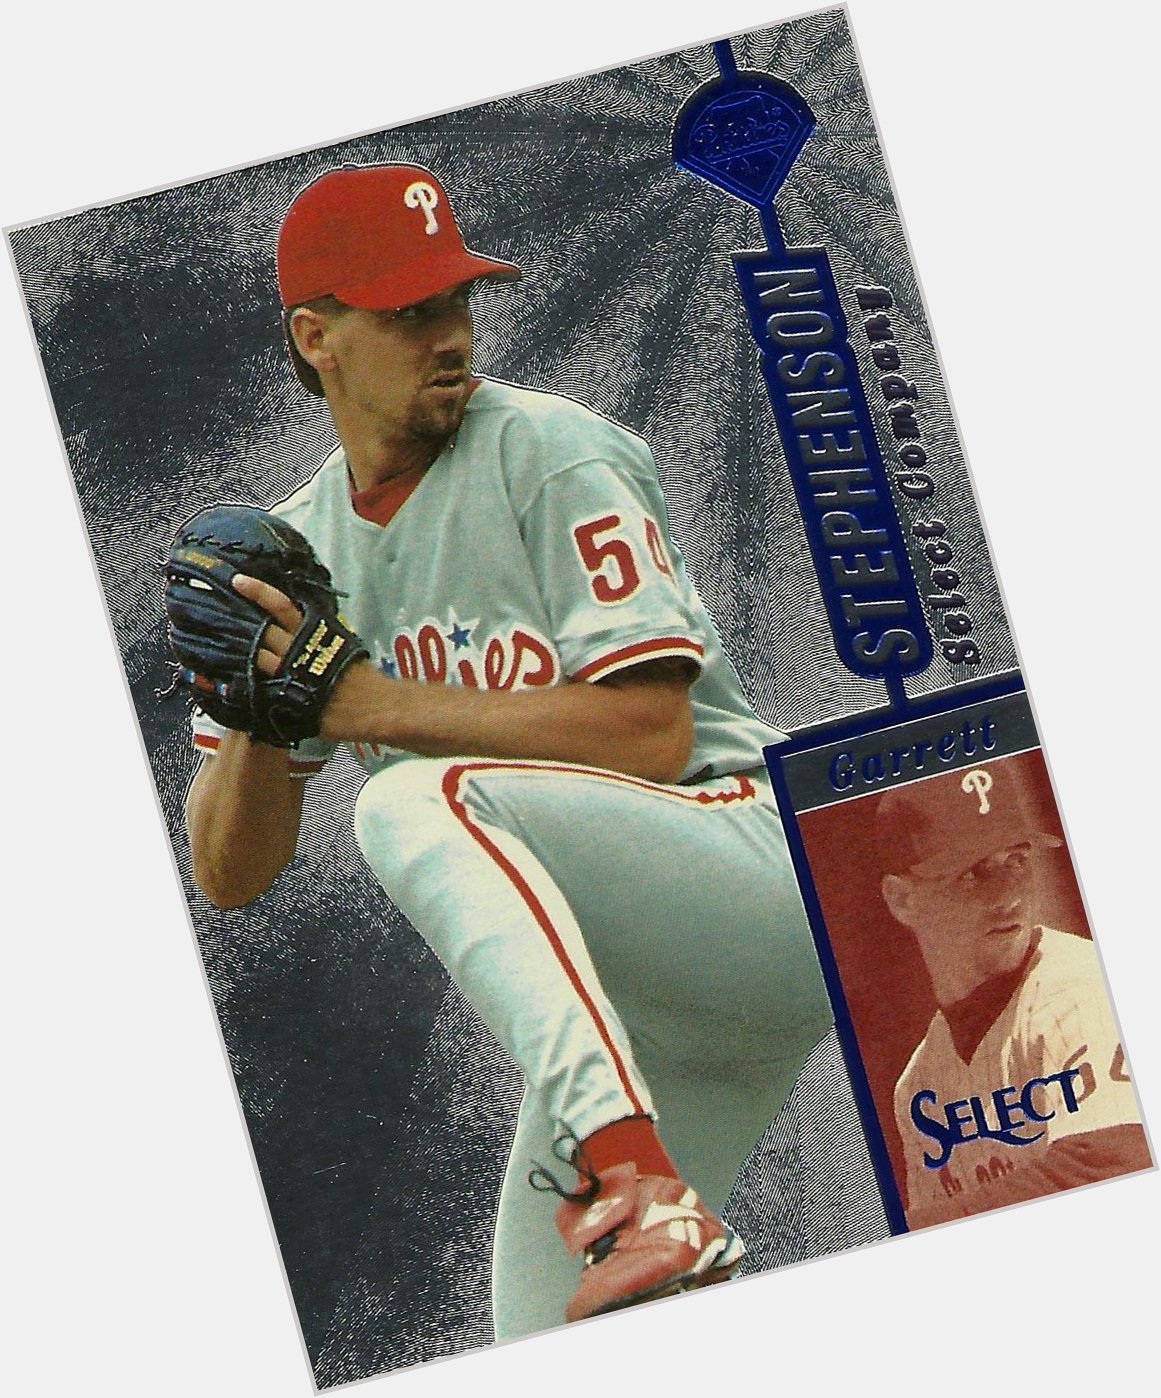 Happy 43rd birthday to 1997-98 pitcher Garrett Stephenson. 